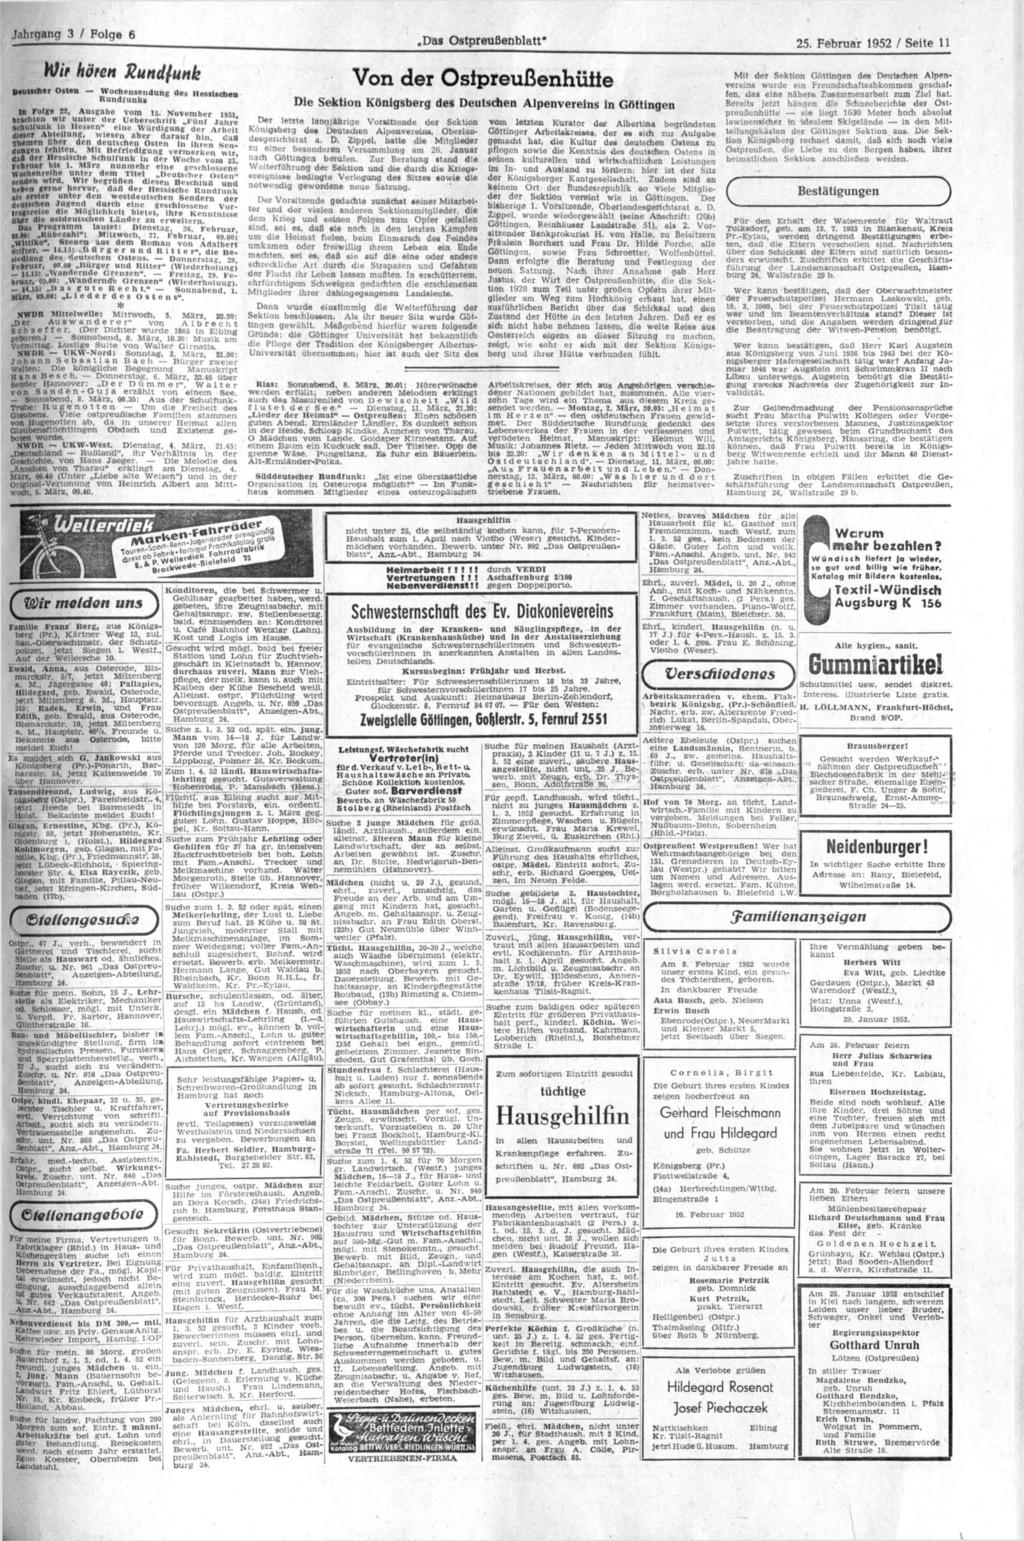 Jahrgang 3 / Folge 6,Das Ostpreußenblatt" 25. Februar 1952 / Seite 11 Wi> hören Rundfunk Deutscher Osten Wochensendung des Hessischen Rundiunki in Folge 12, Ausgabe vom 15.